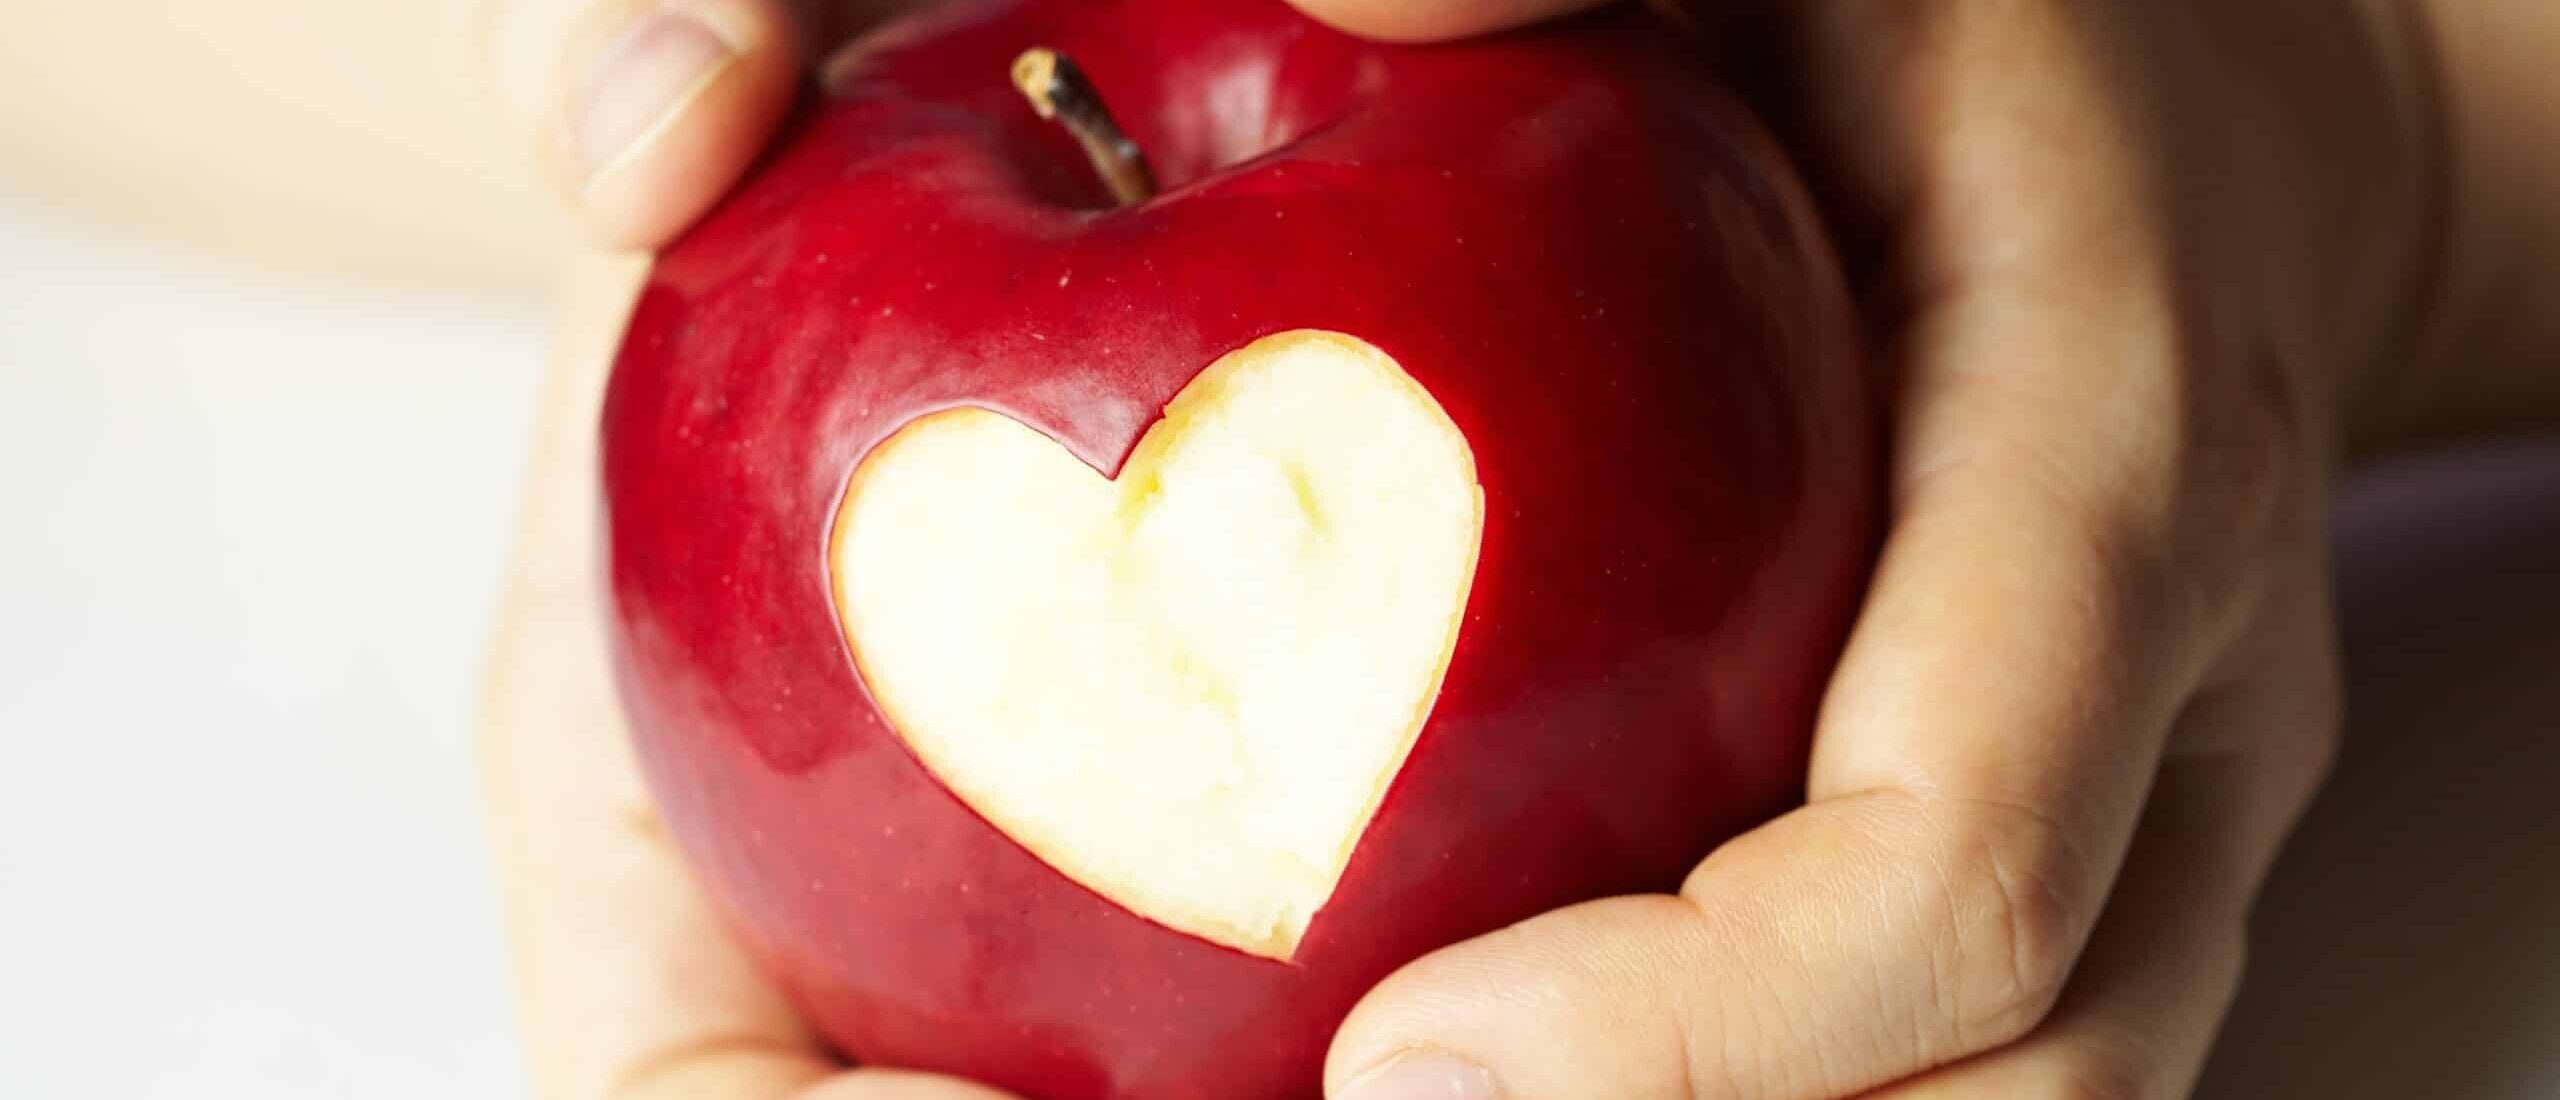 Kädet pitävät punaista omenaa, jota on kuorittu sydämen muotoisen kuvion verran.